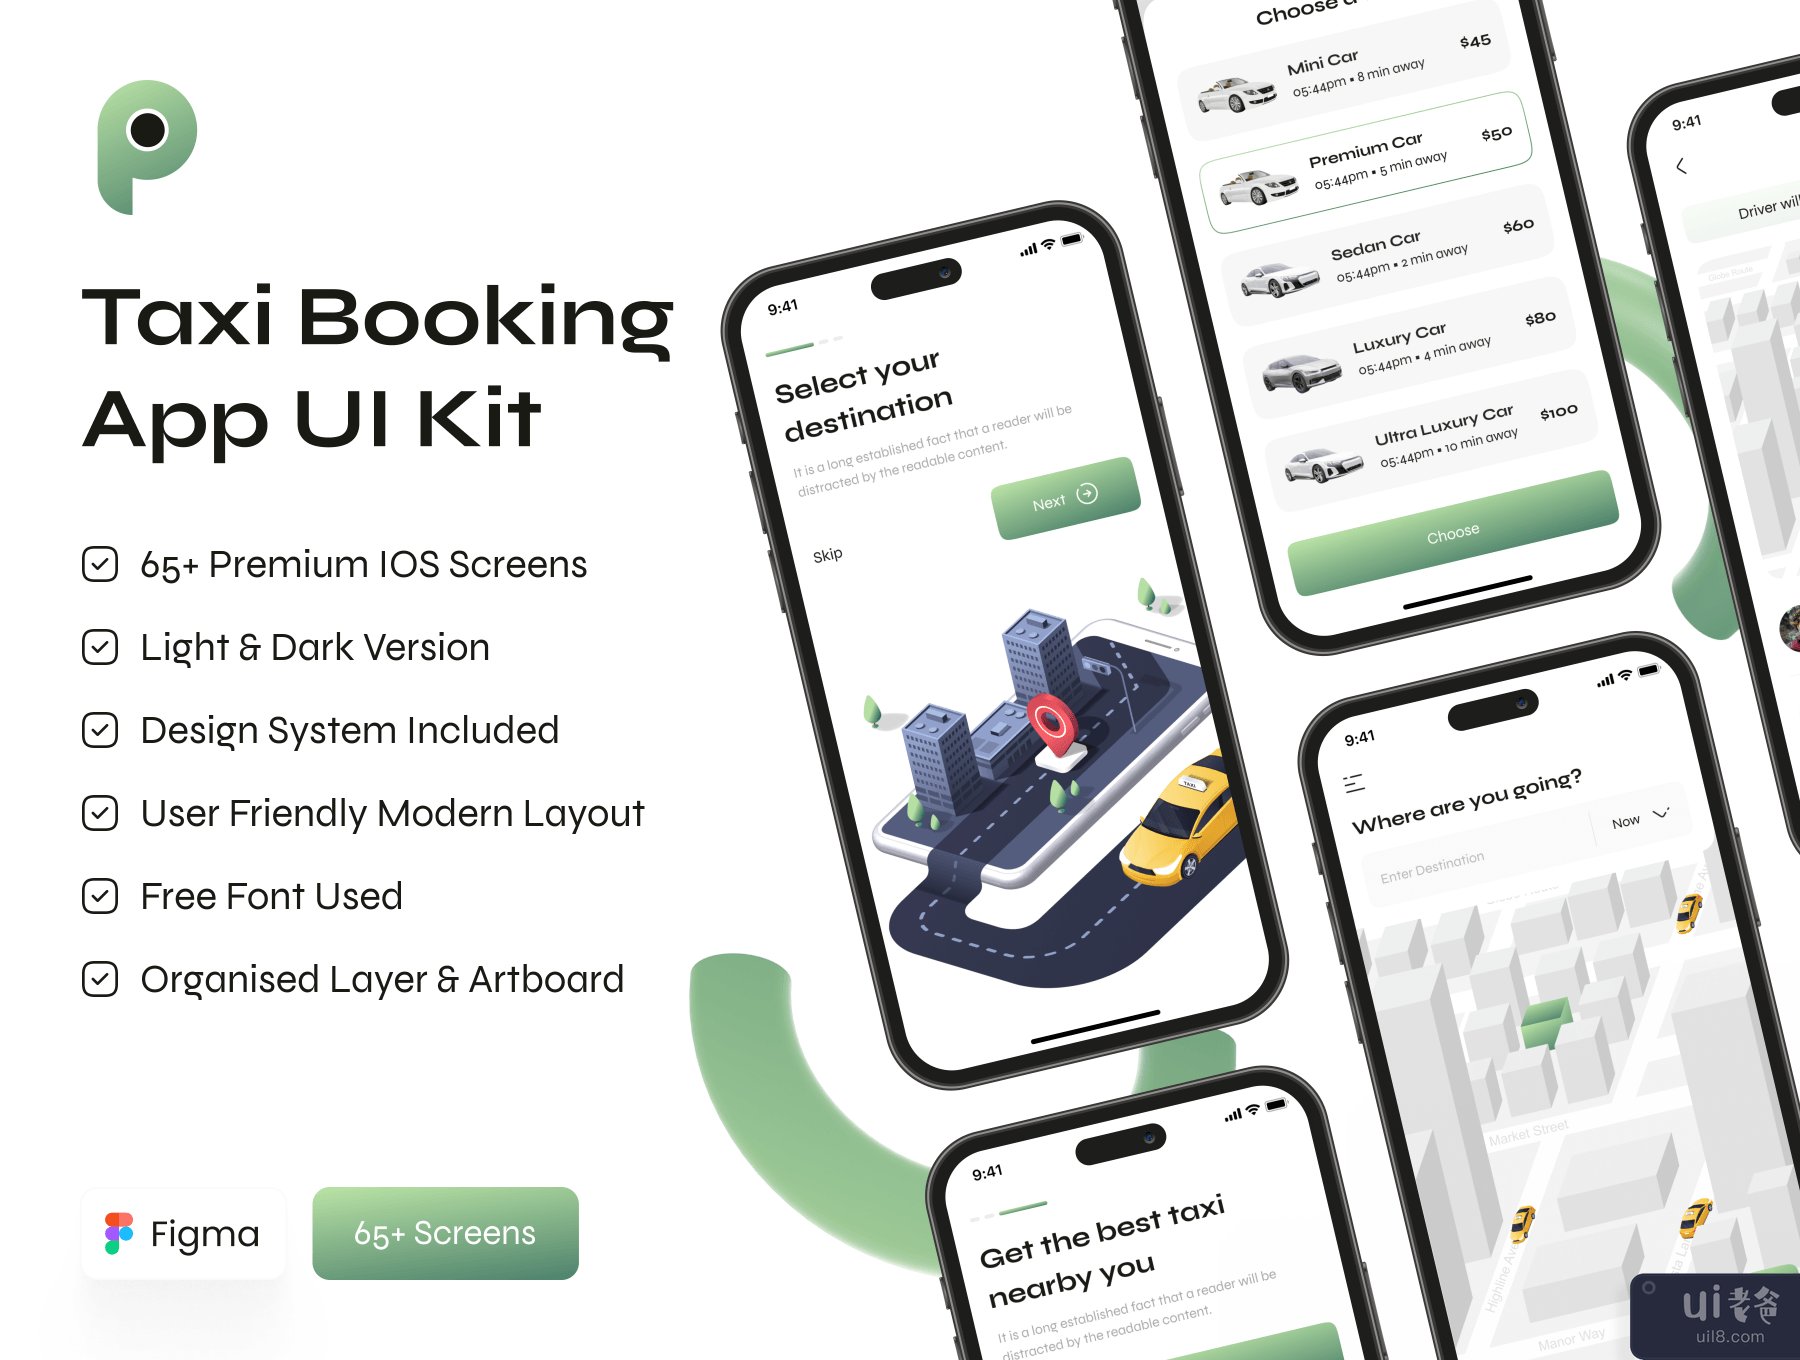 出租车预订应用程序 UI 工具包 (Taxi Booking App UI Kit)插图7